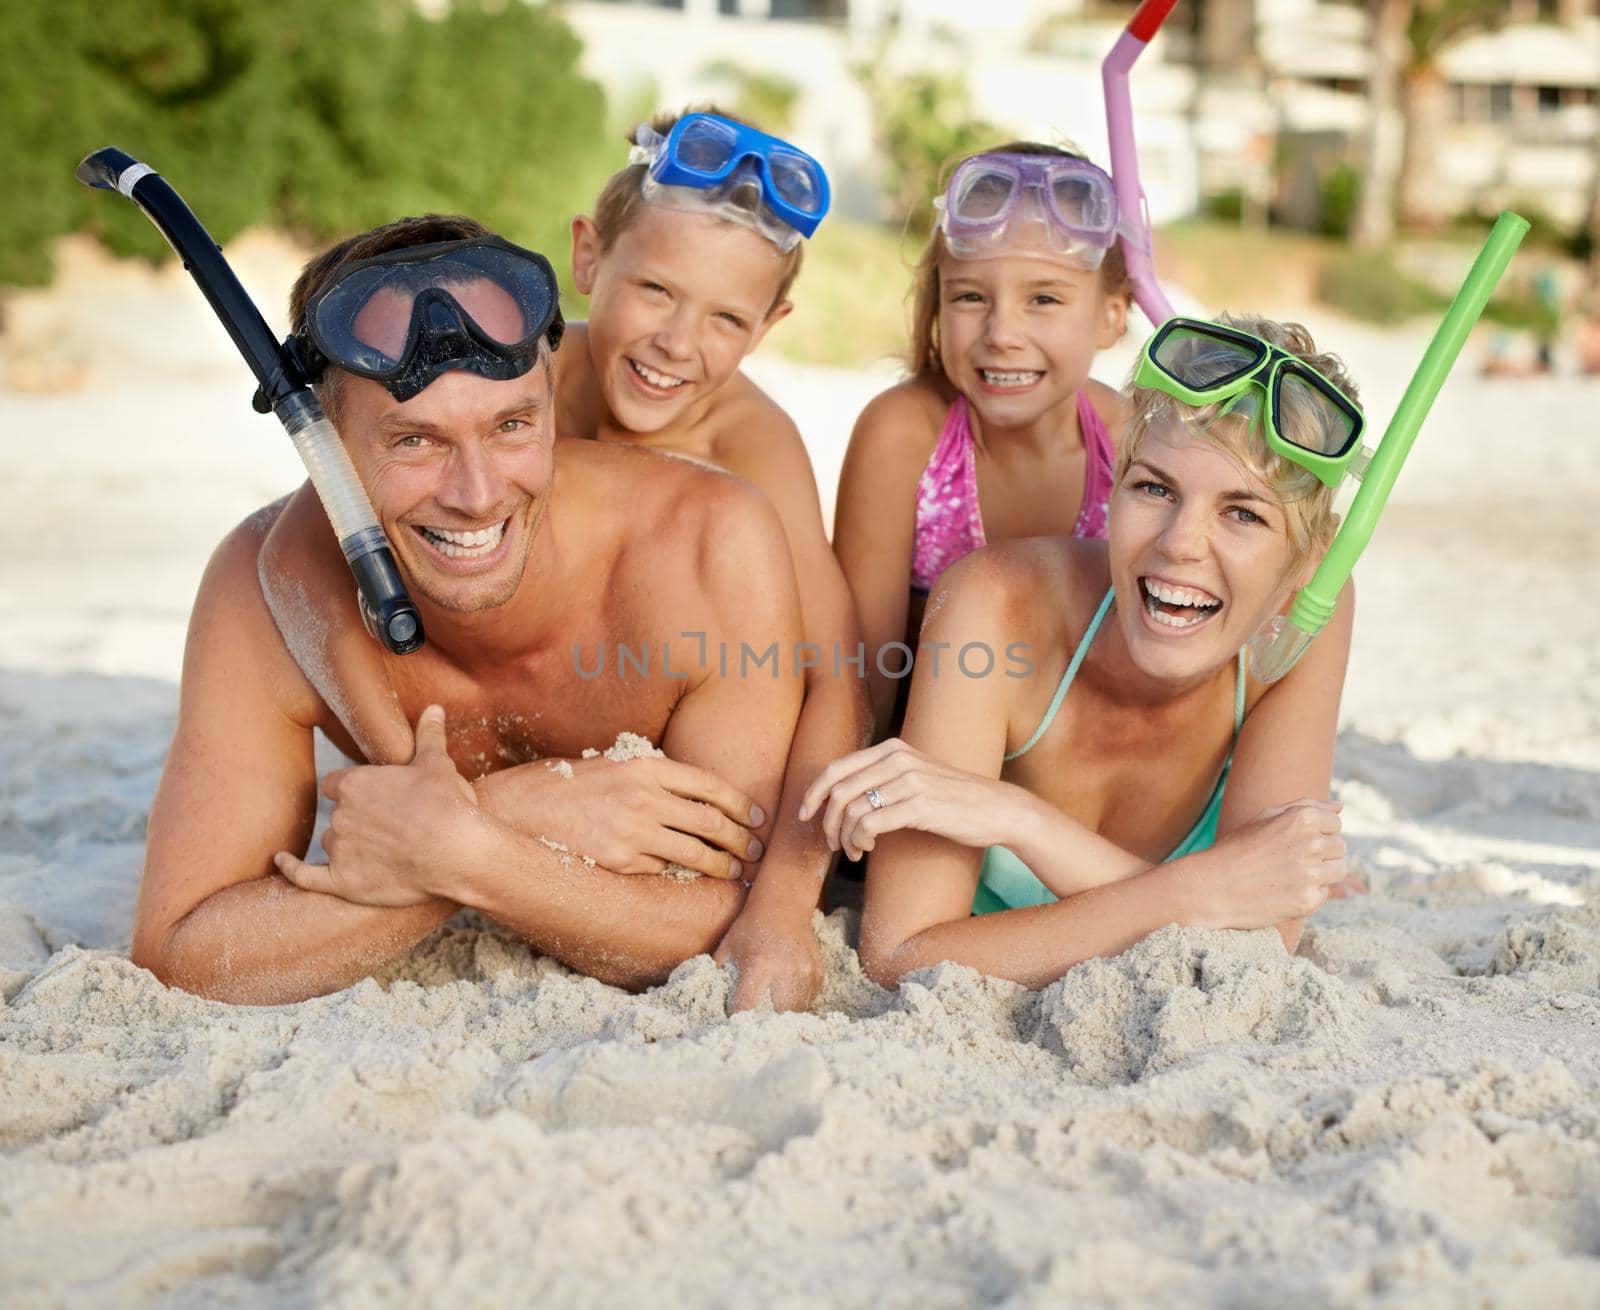 A family having fun at the beach.